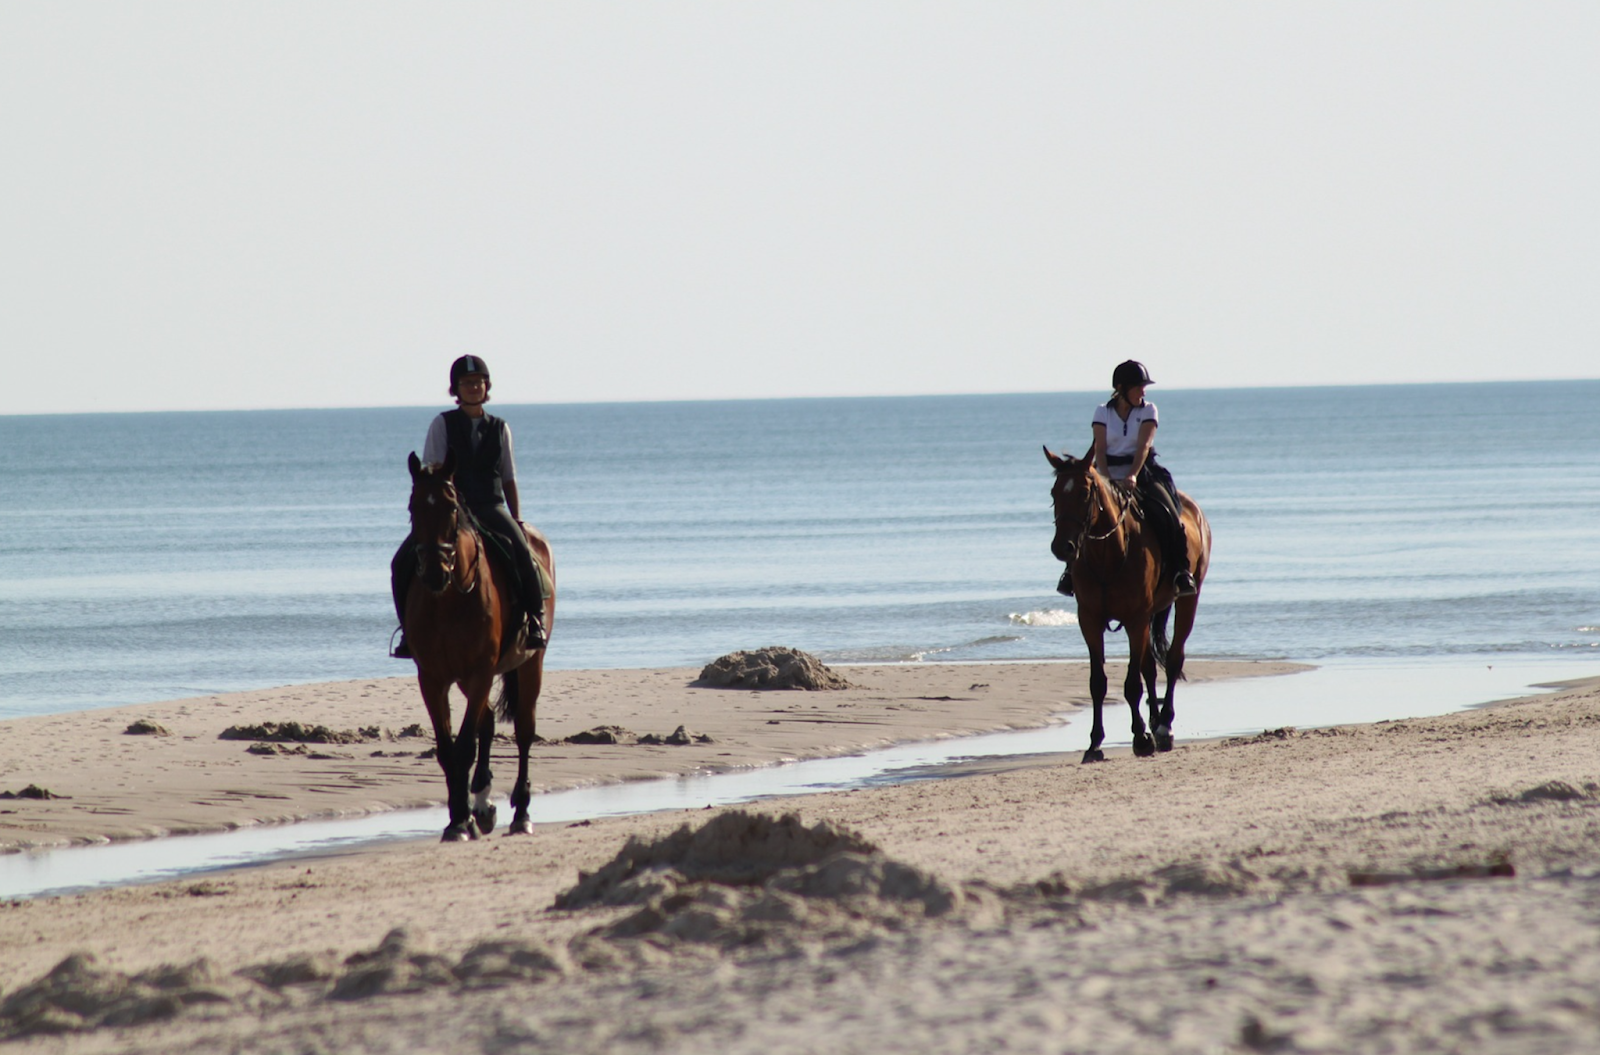 2 horses riding across a beach